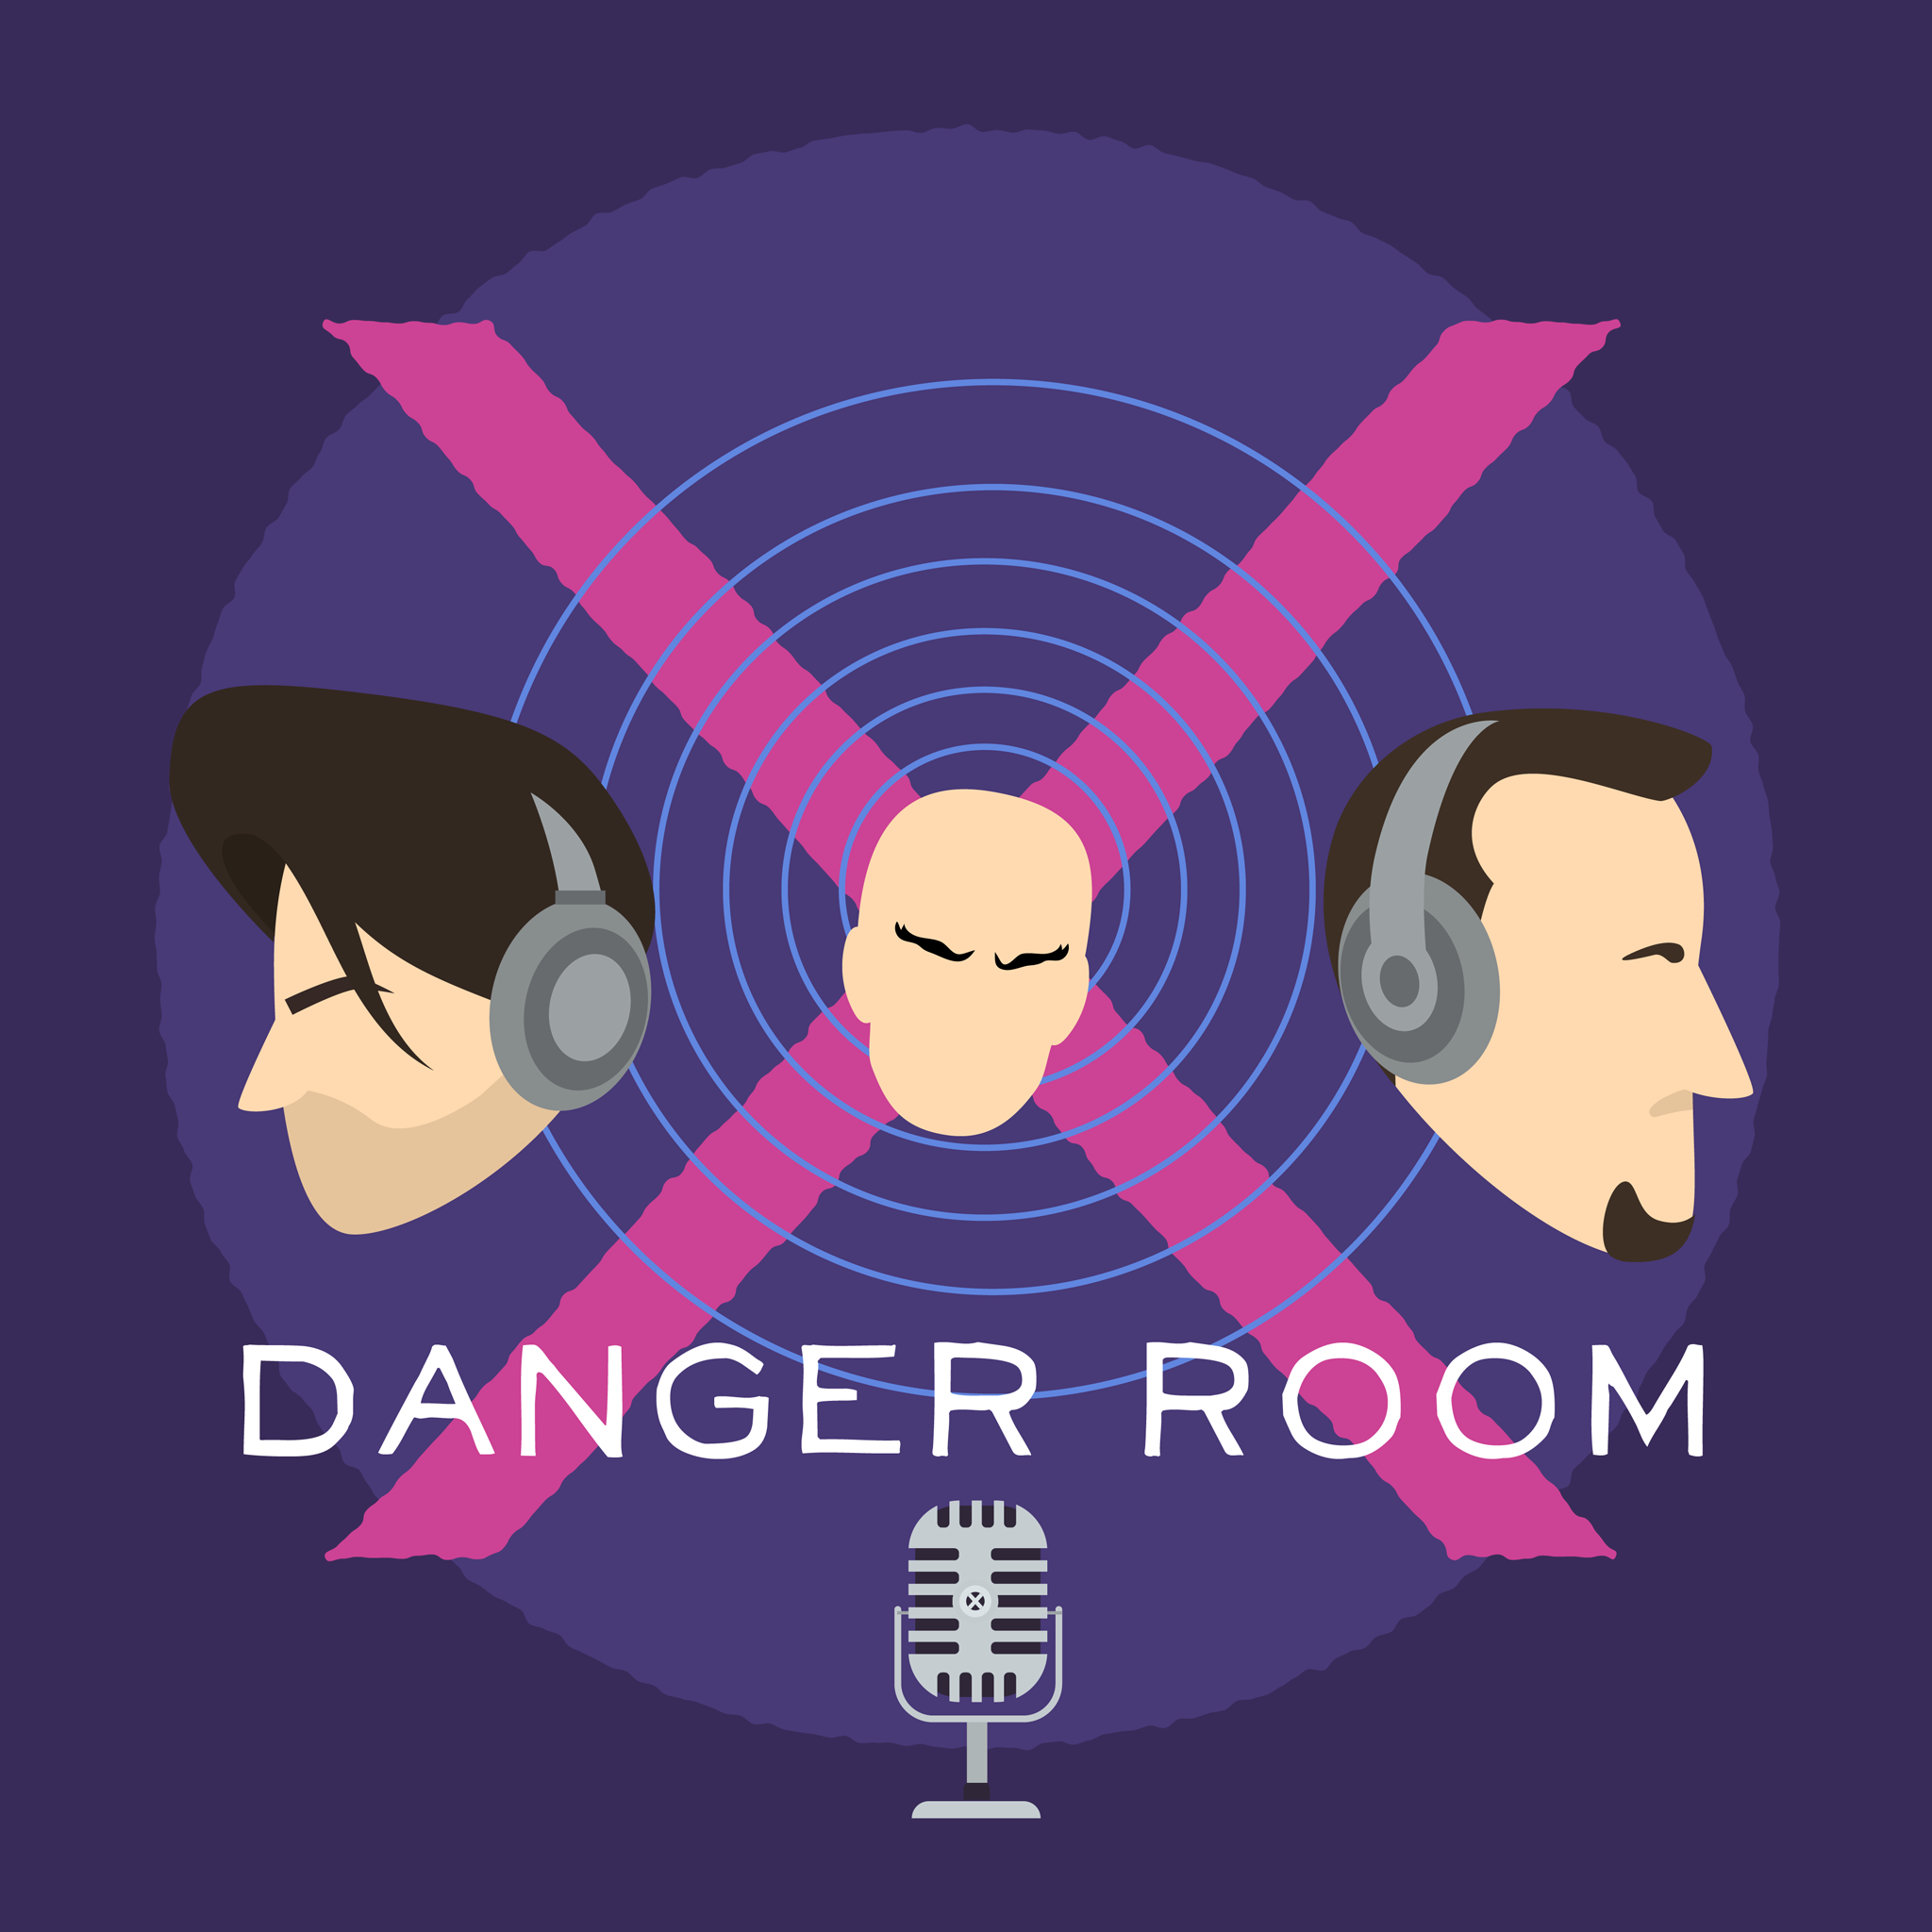 Close Call! - The Uncanny X-Men #286 - Danger Room #374